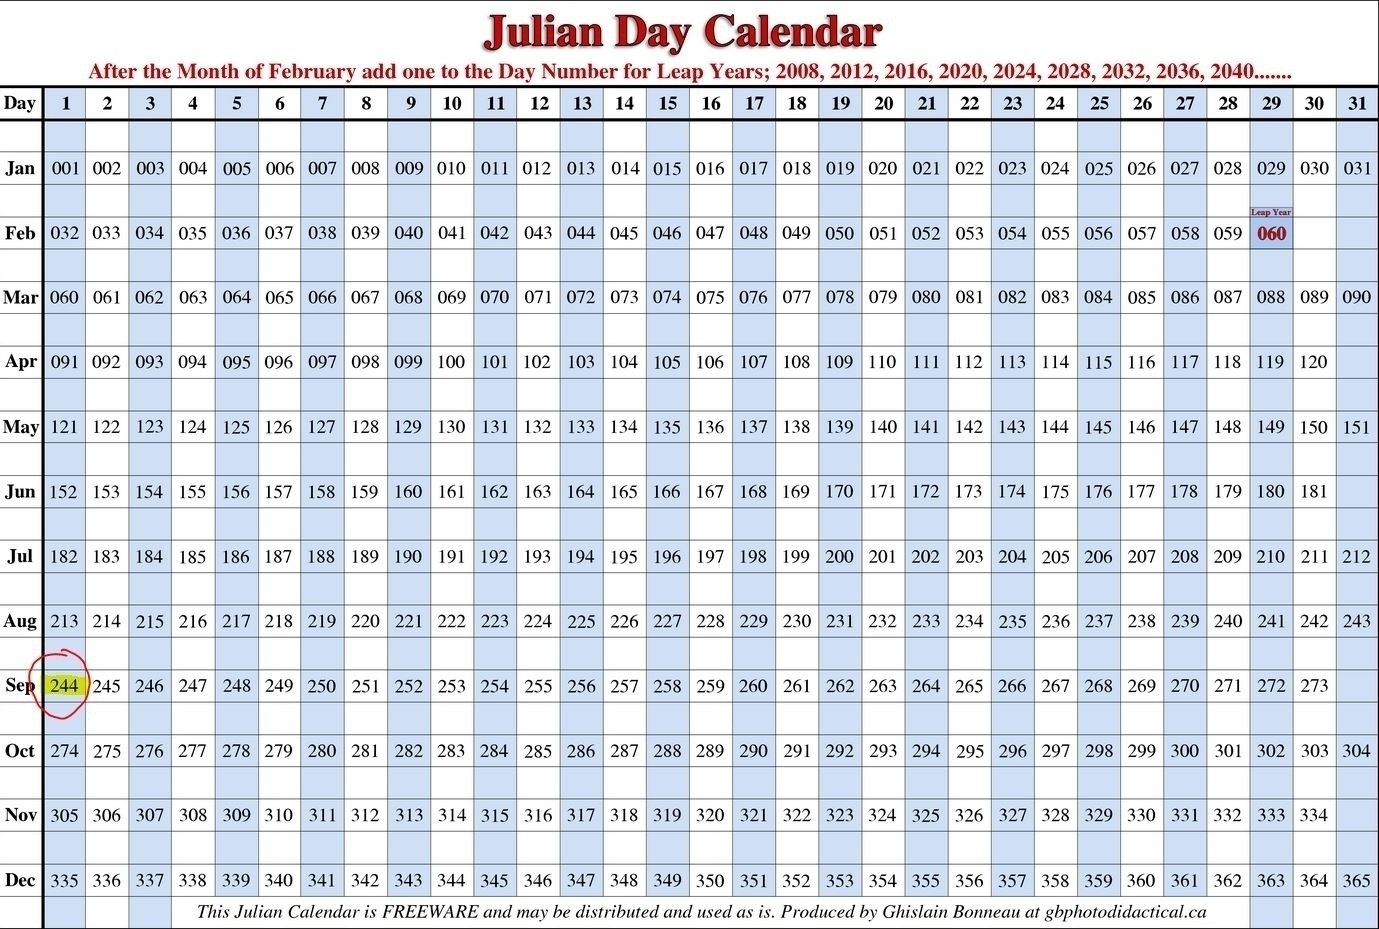 Julian Calendar 2020  365 Day Julian Calendar 2020